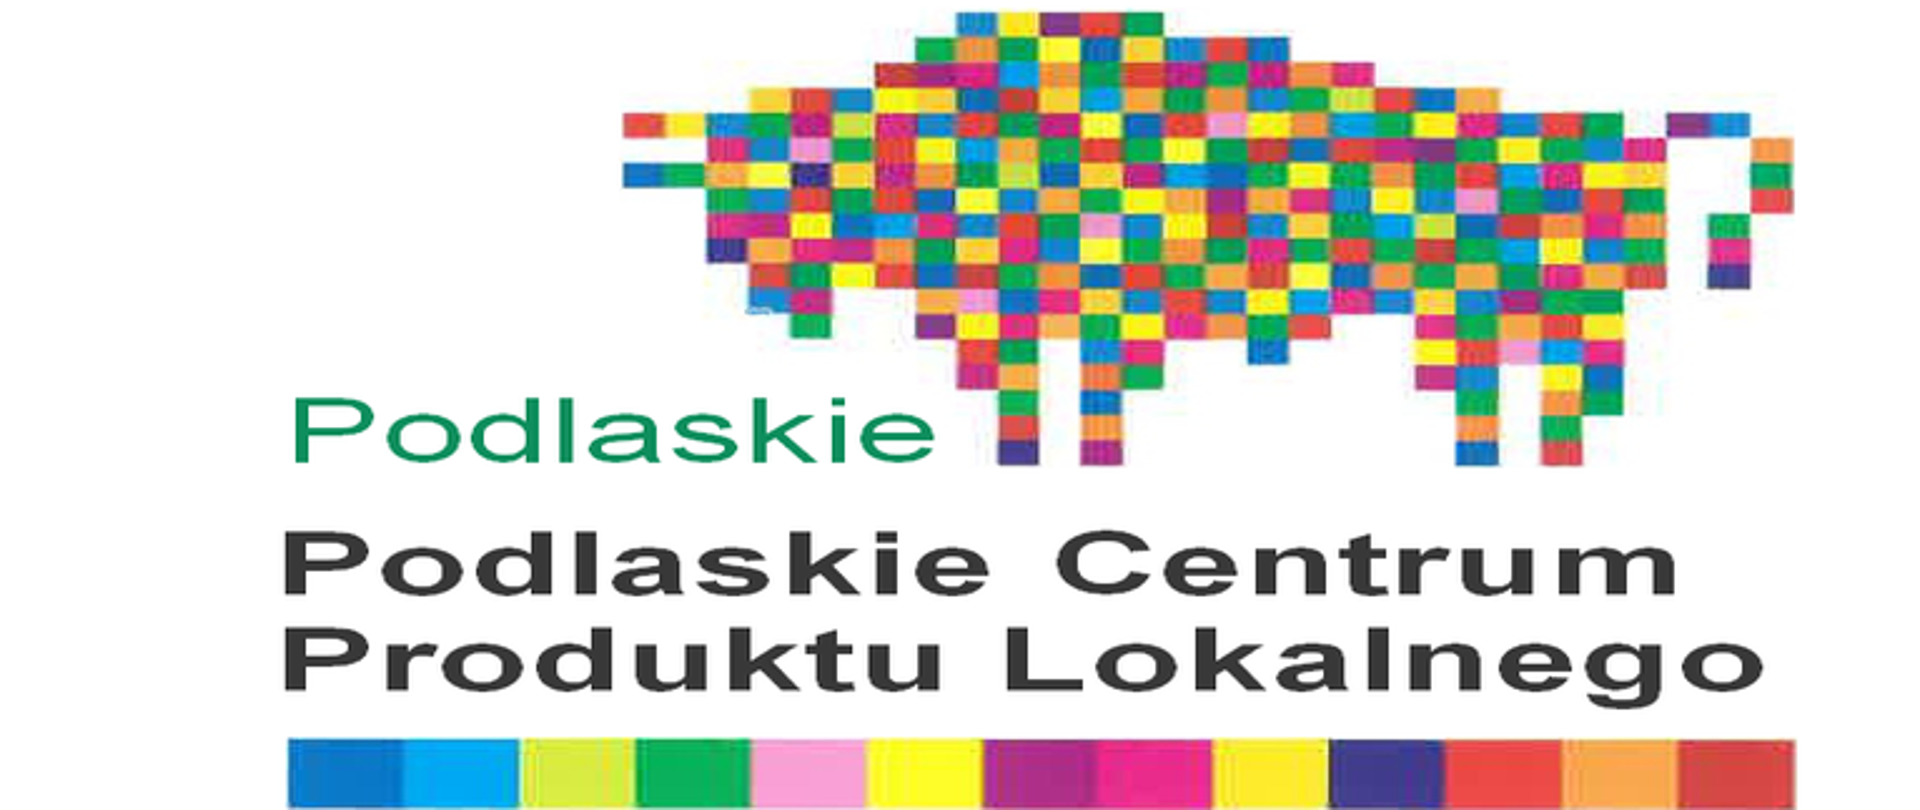 Na białym tle logo żubra Podlaskie poniżej napis Podlaskie Centrum Produktu Lokalnego pod napisem szlaczek z małych kwadratów w różnych kolorach.